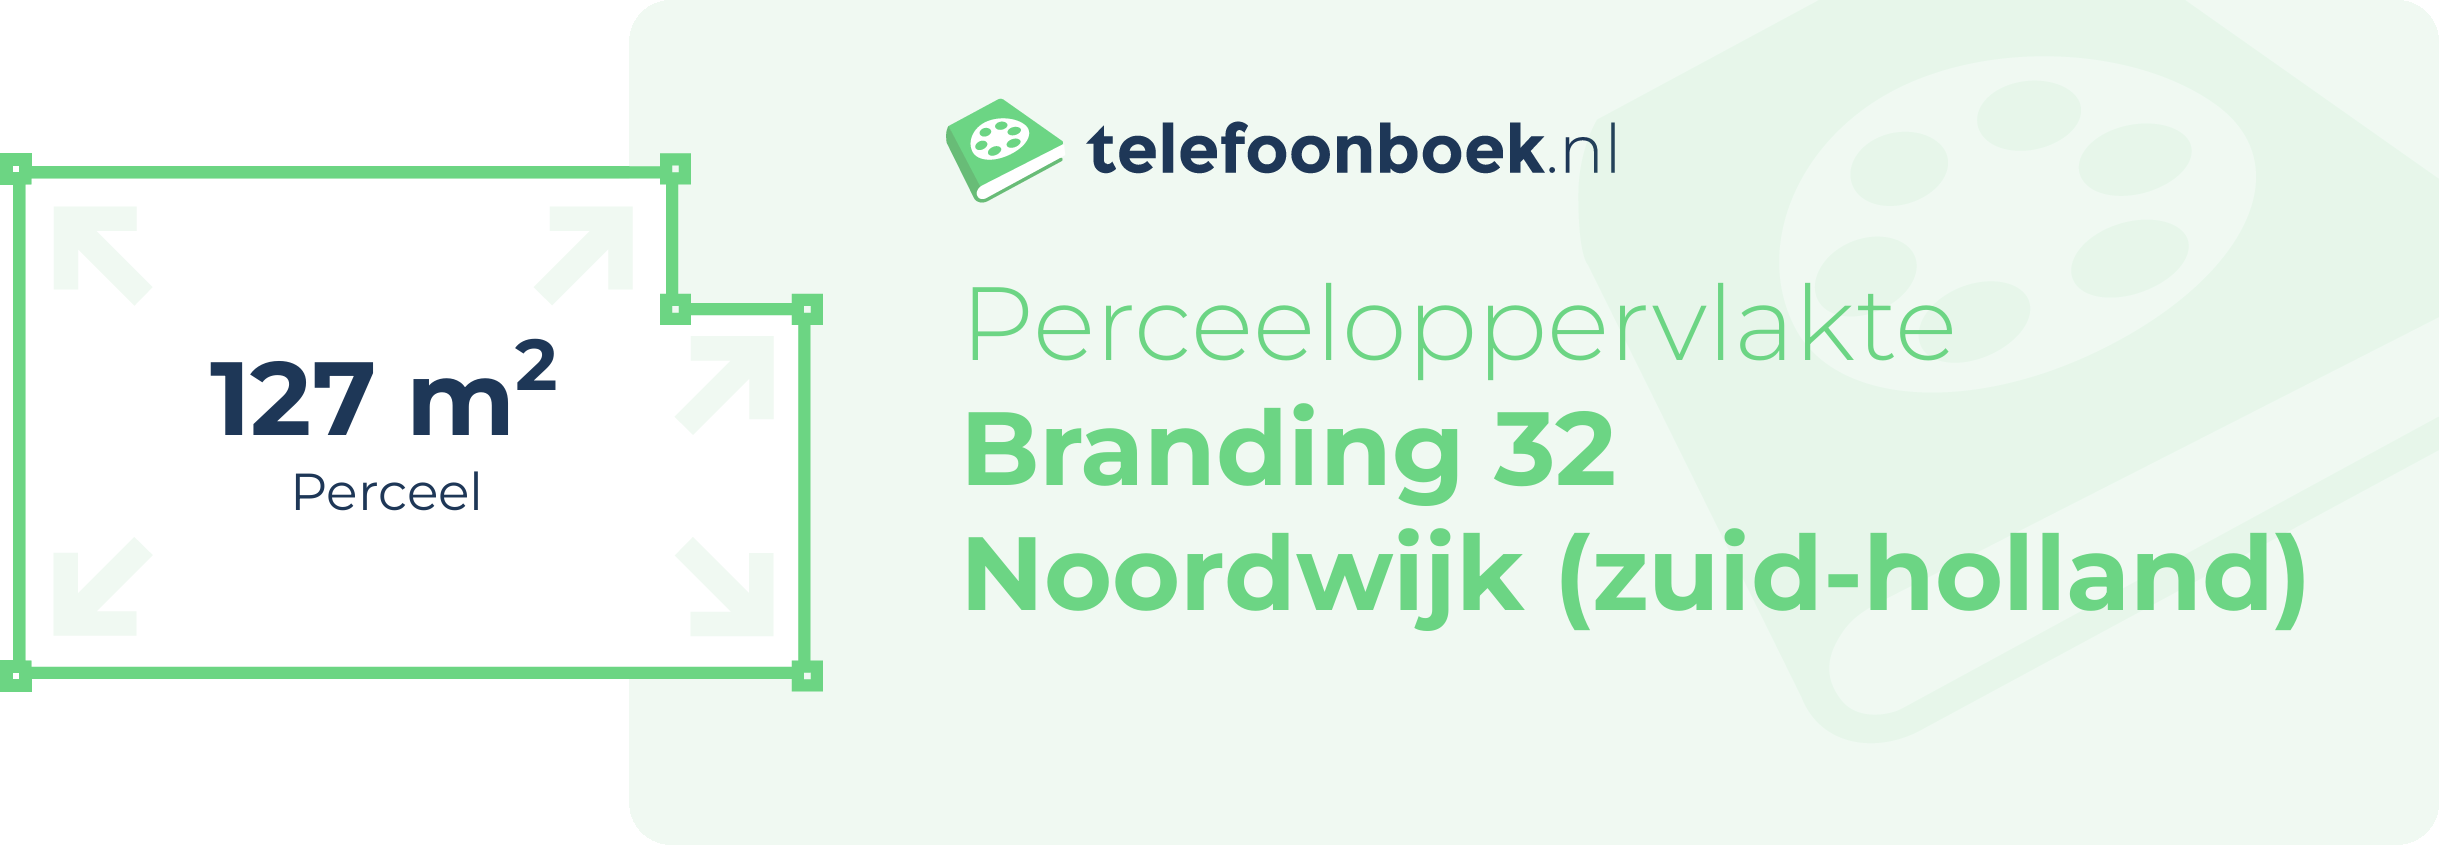 Perceeloppervlakte Branding 32 Noordwijk (Zuid-Holland)